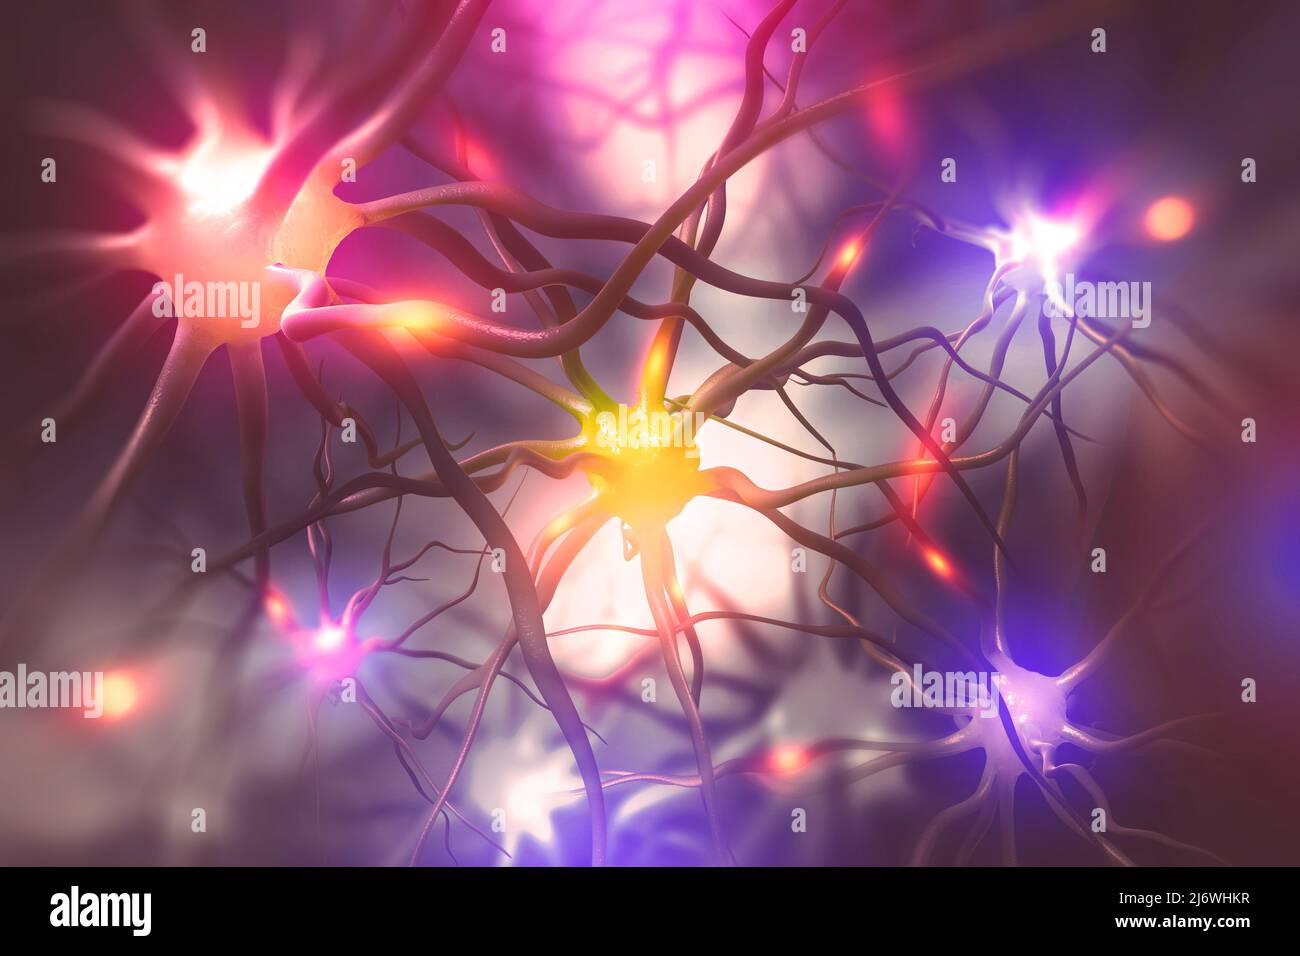 Cerveau. Activité électrique du cerveau humain. 3D illustration de la recherche scientifique sur les réseaux neuronaux Banque D'Images